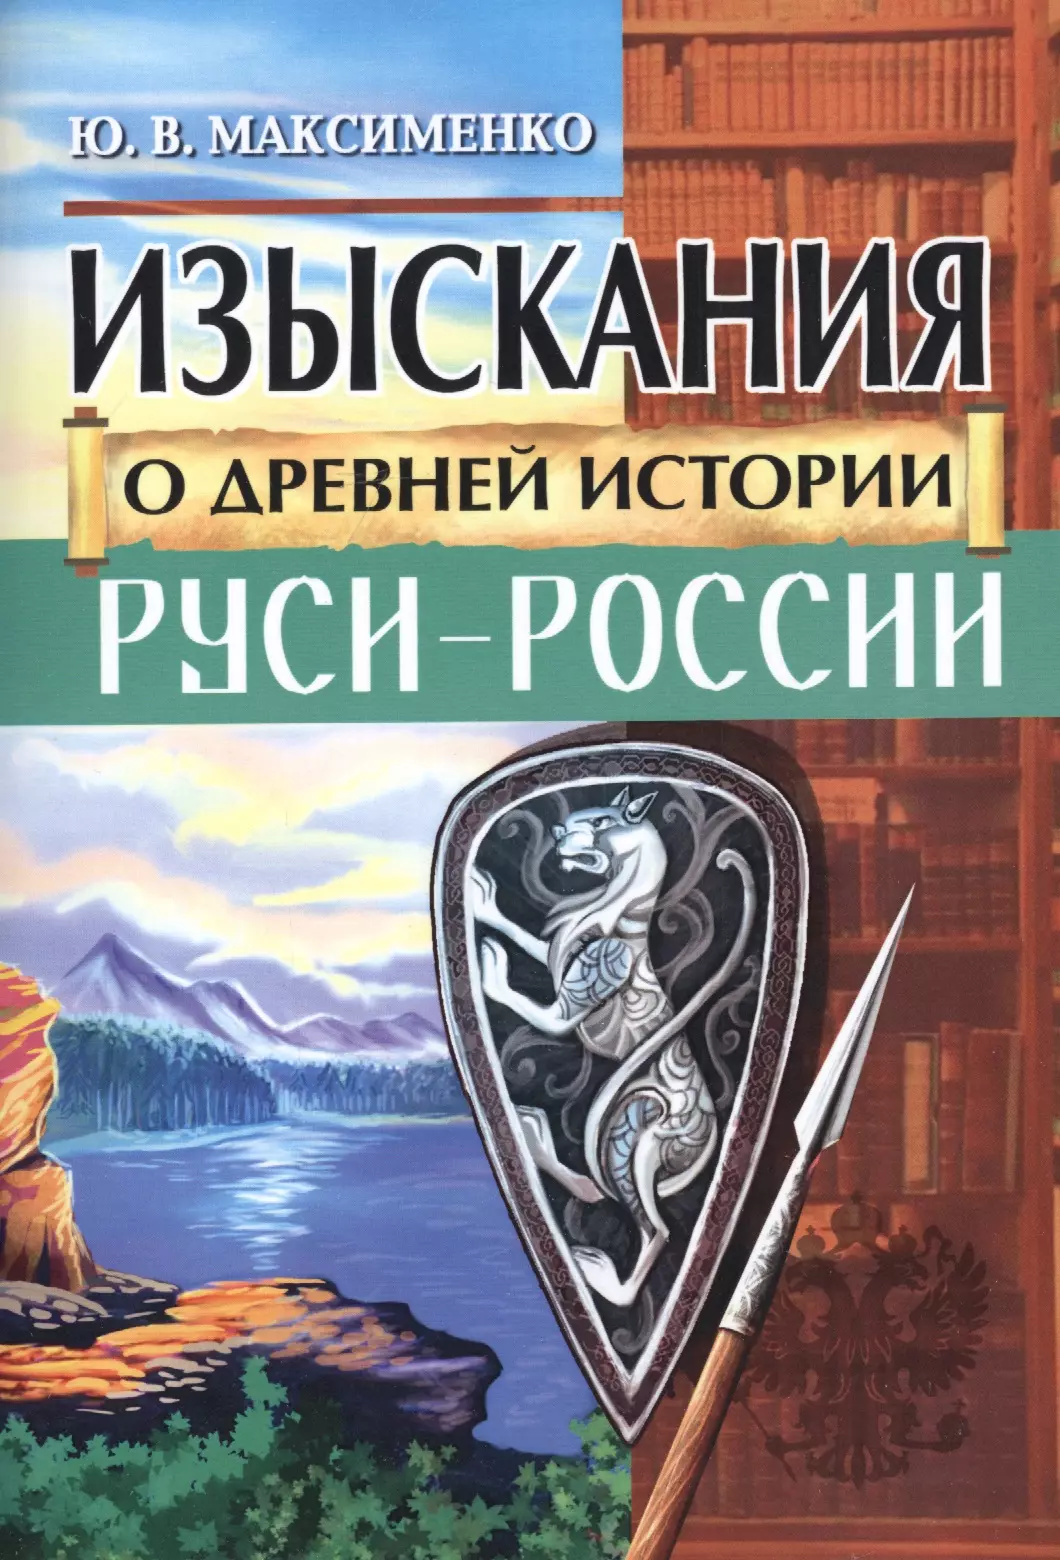  - Изыскания о Древней истории Руси-России